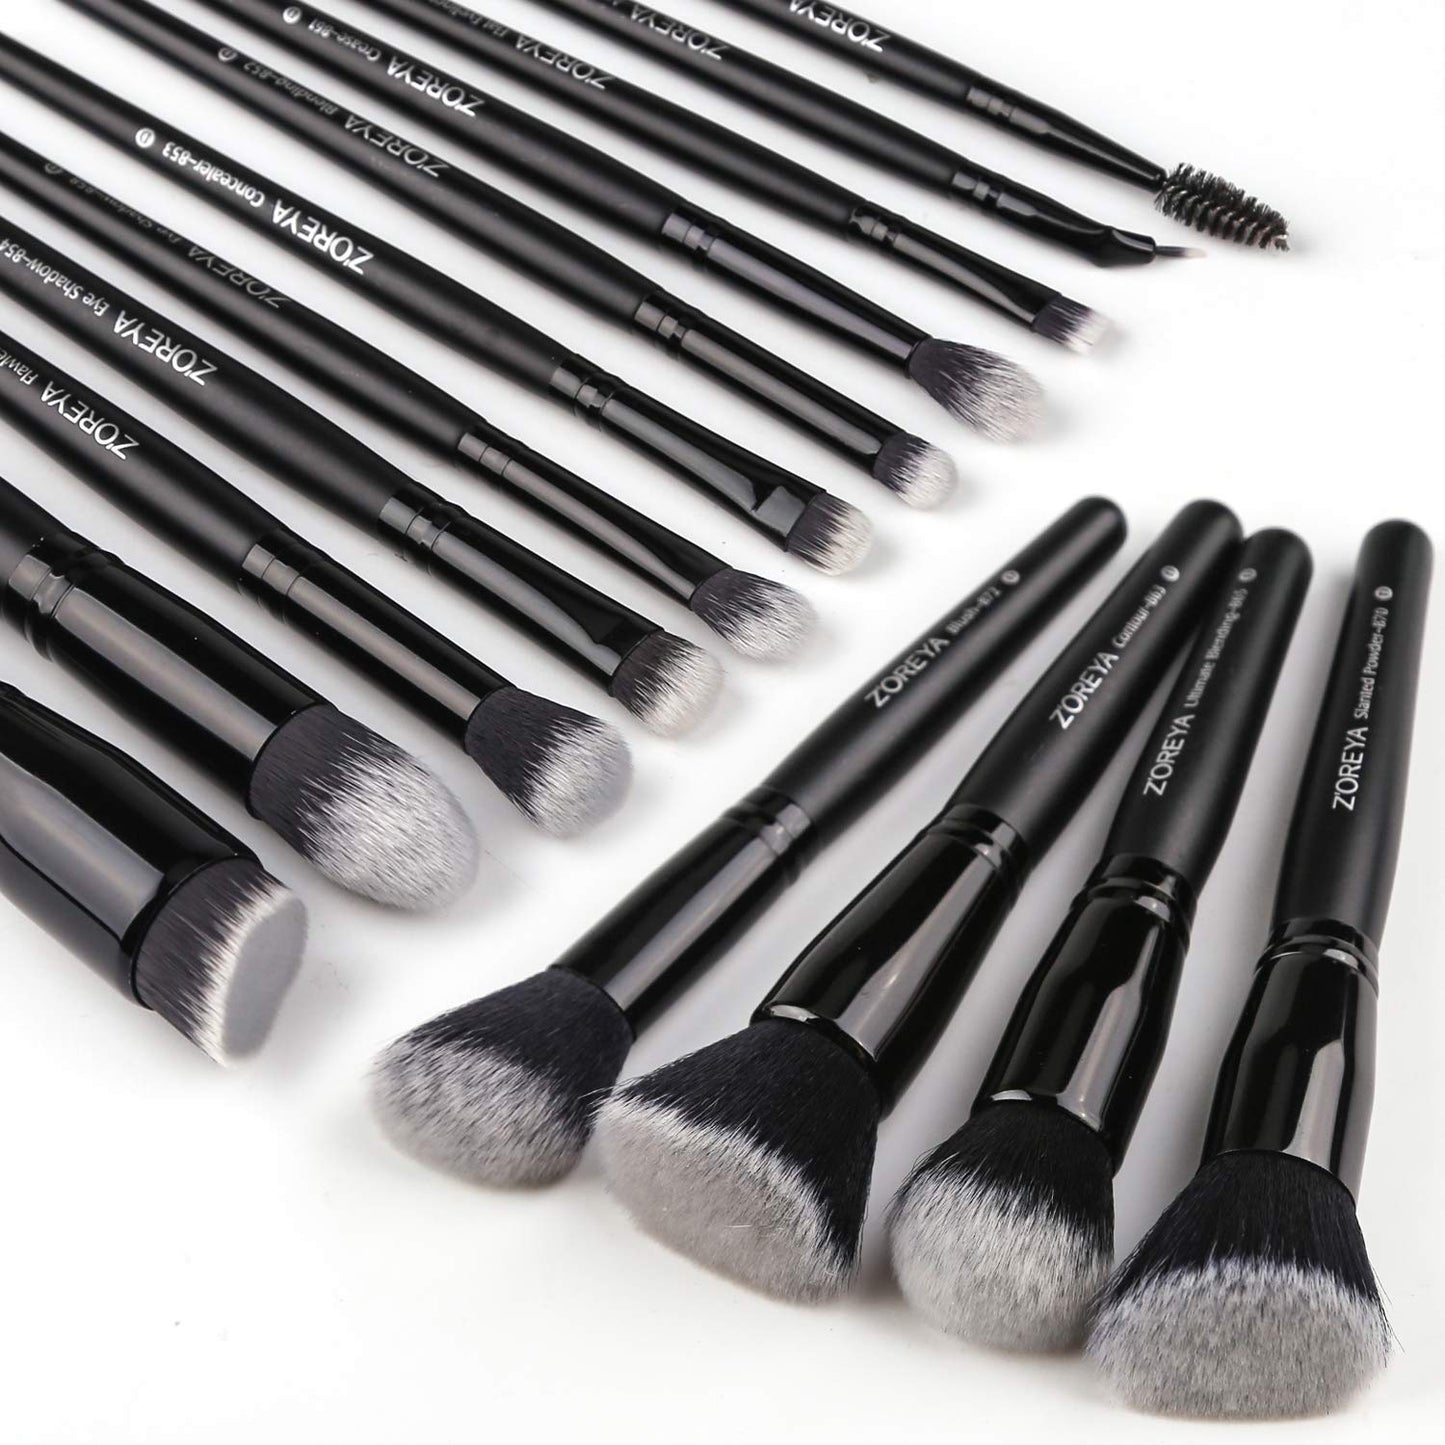 ZOREYA Makeup Brushes 